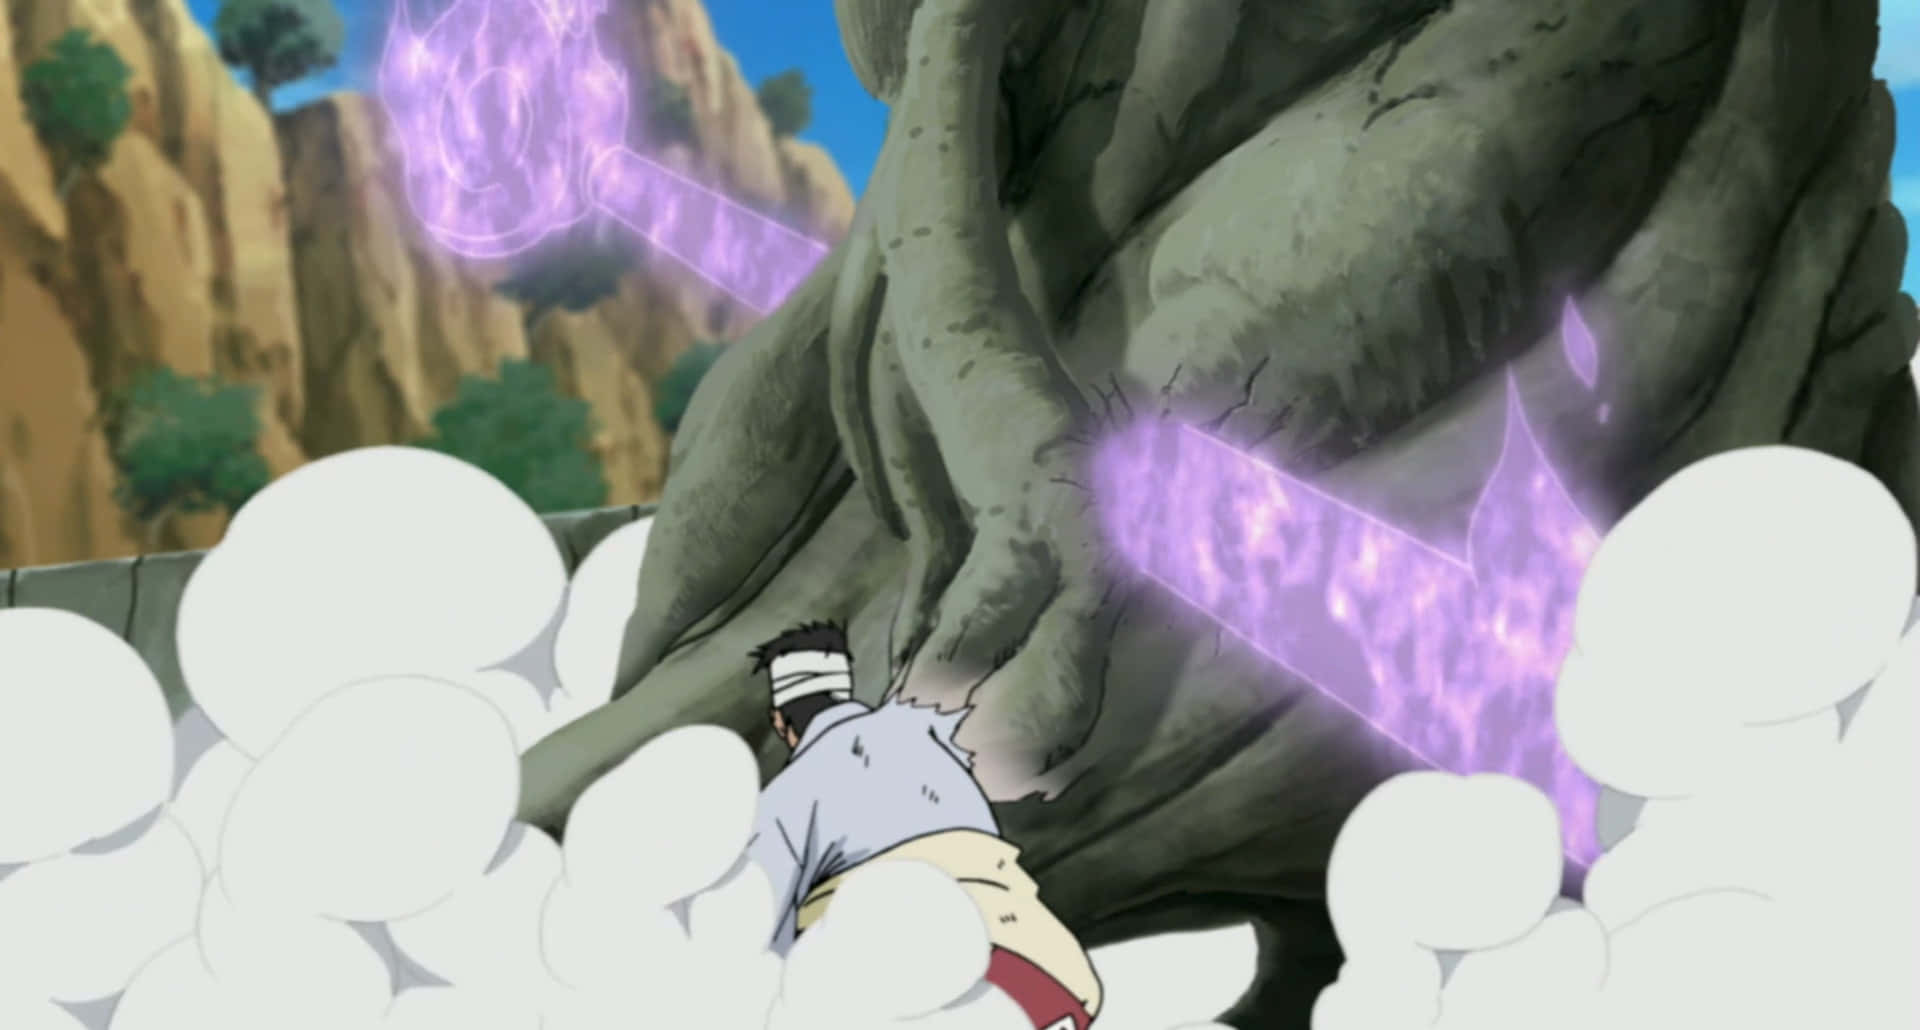 Danzo Shimura unleashing his power in an epic scene Wallpaper